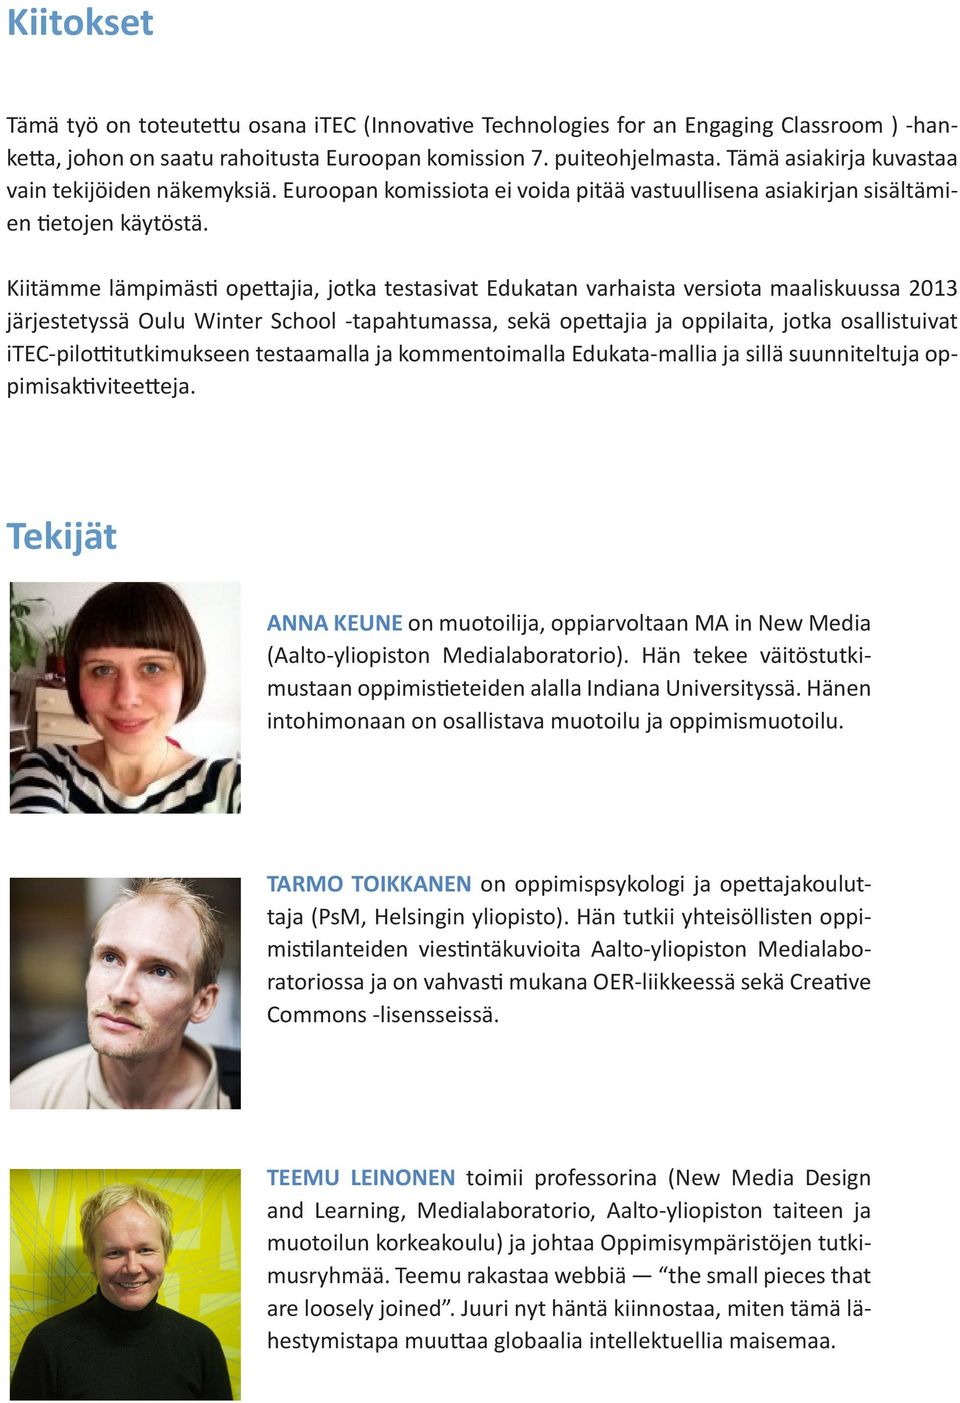 Kiitämme lämpimästi opettajia, jotka testasivat Edukatan varhaista versiota maaliskuussa 2013 järjestetyssä Oulu Winter School -tapahtumassa, sekä opettajia ja oppilaita, jotka osallistuivat